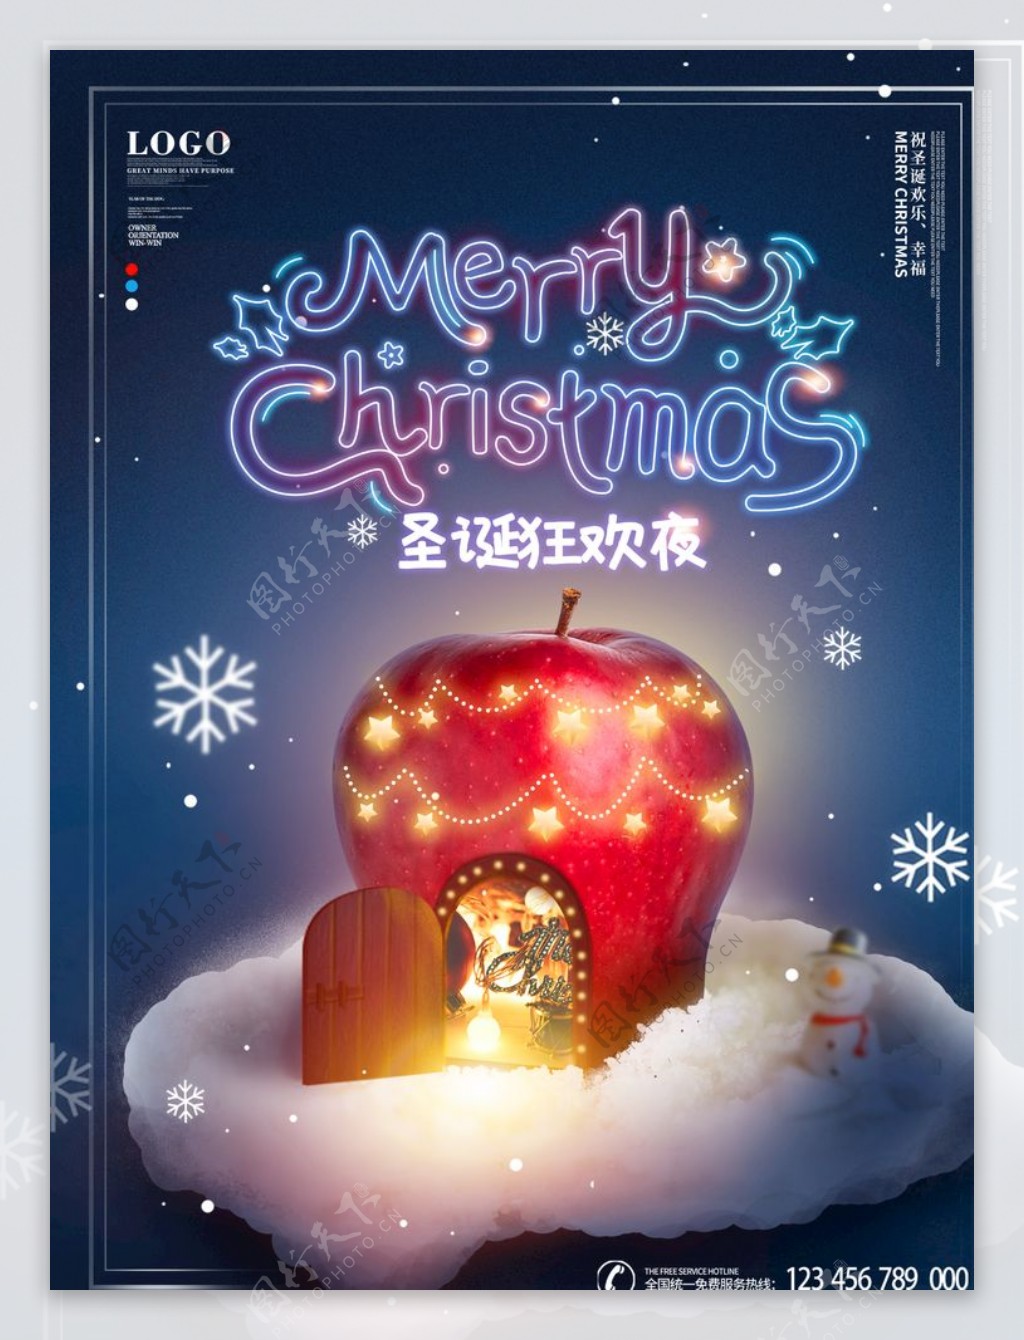 霓虹简约创意圣诞狂欢海报图片